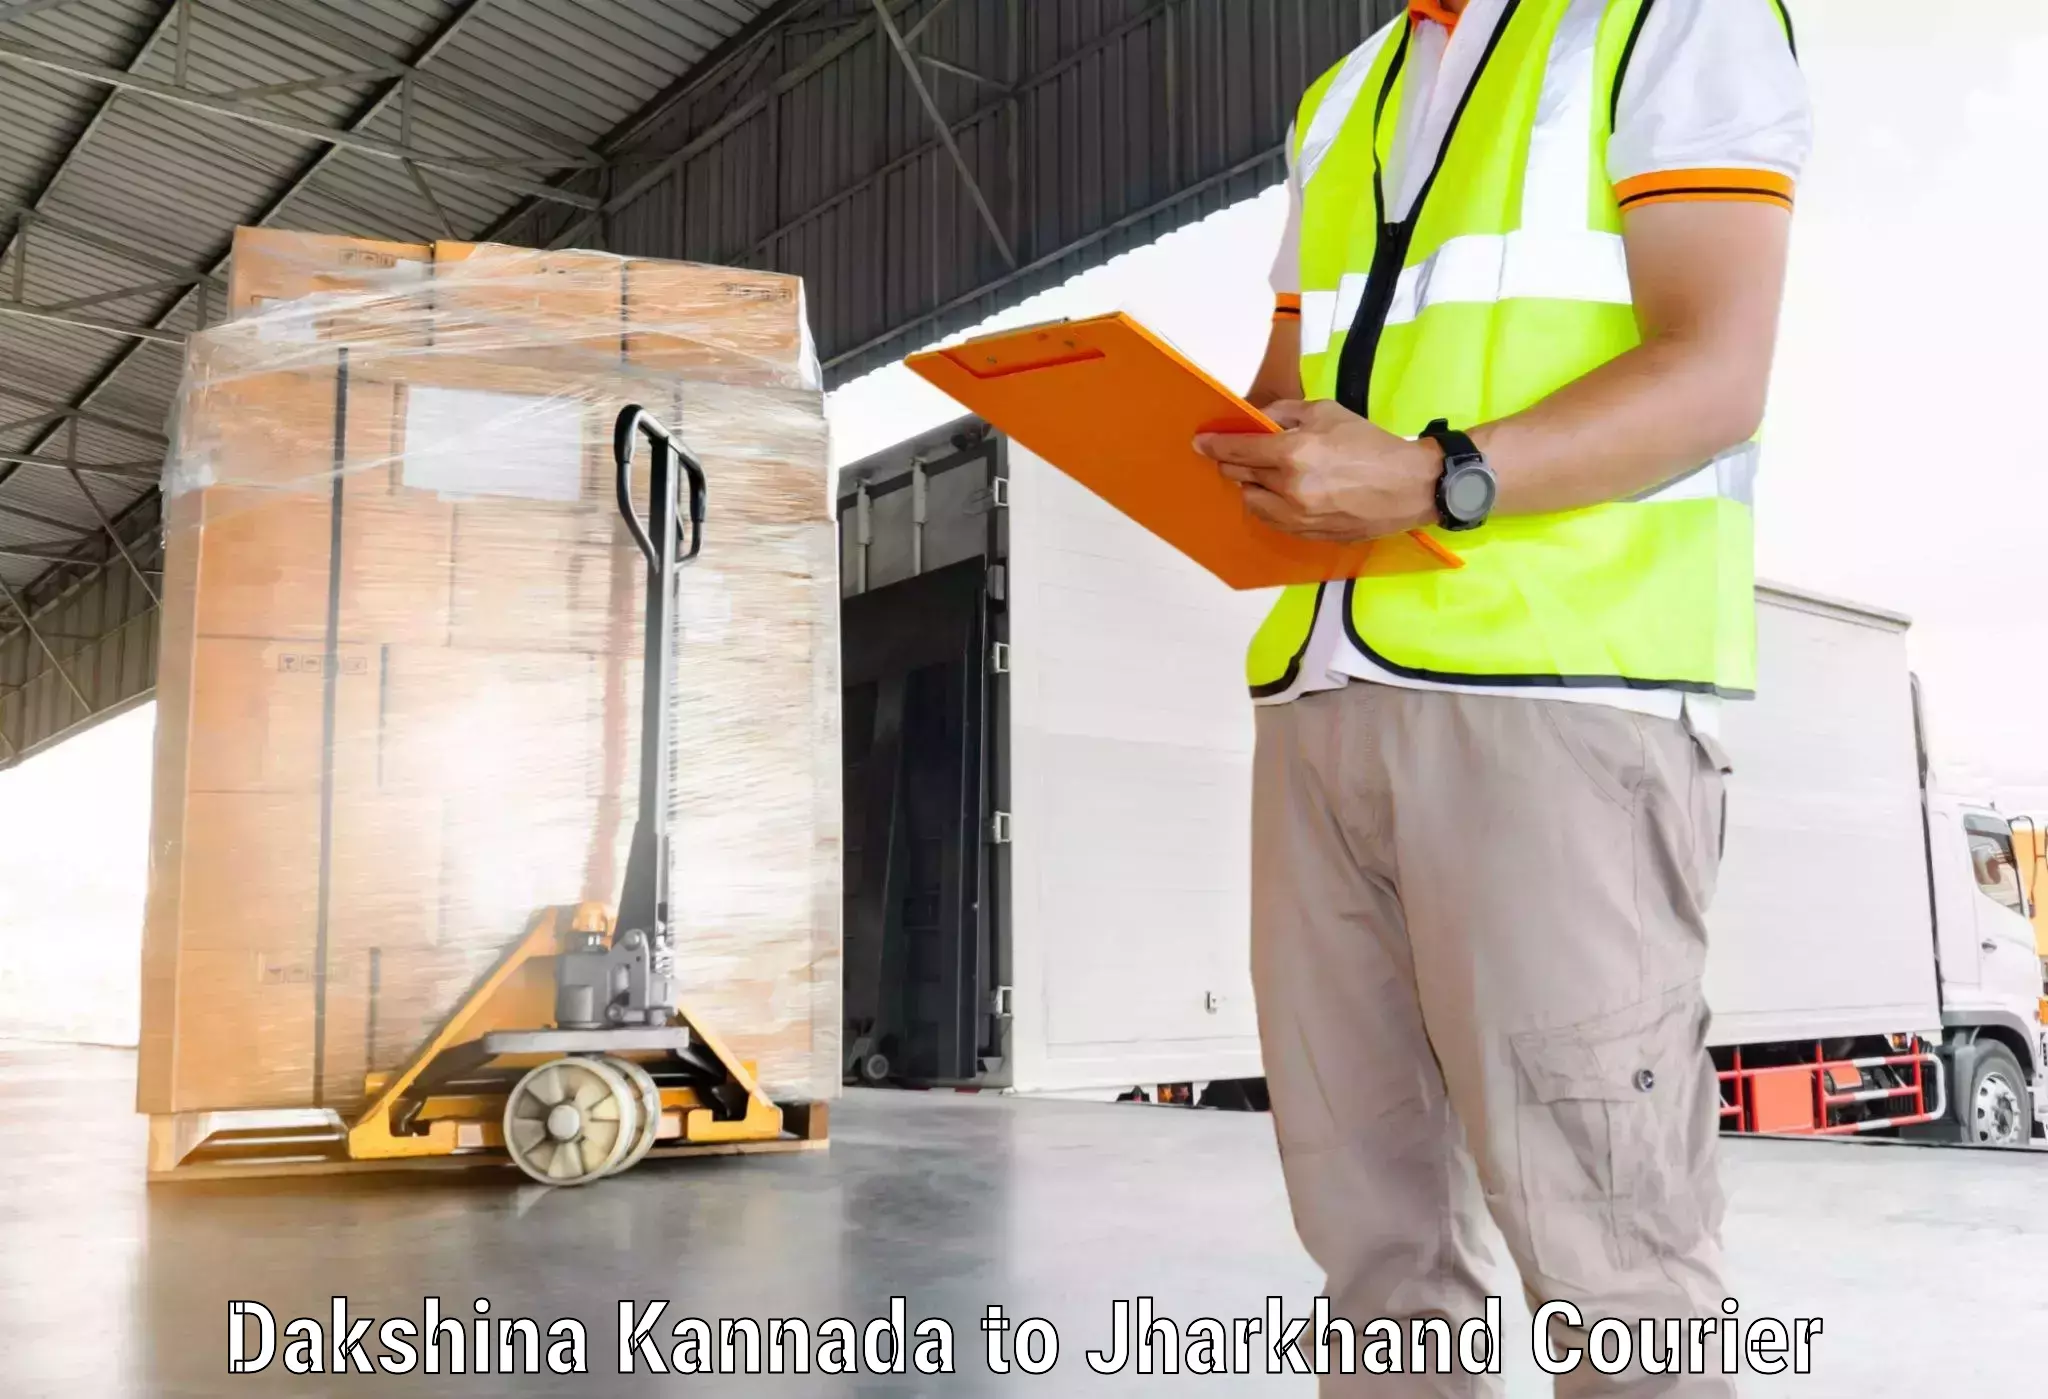 Customer-centric shipping Dakshina Kannada to Bundu